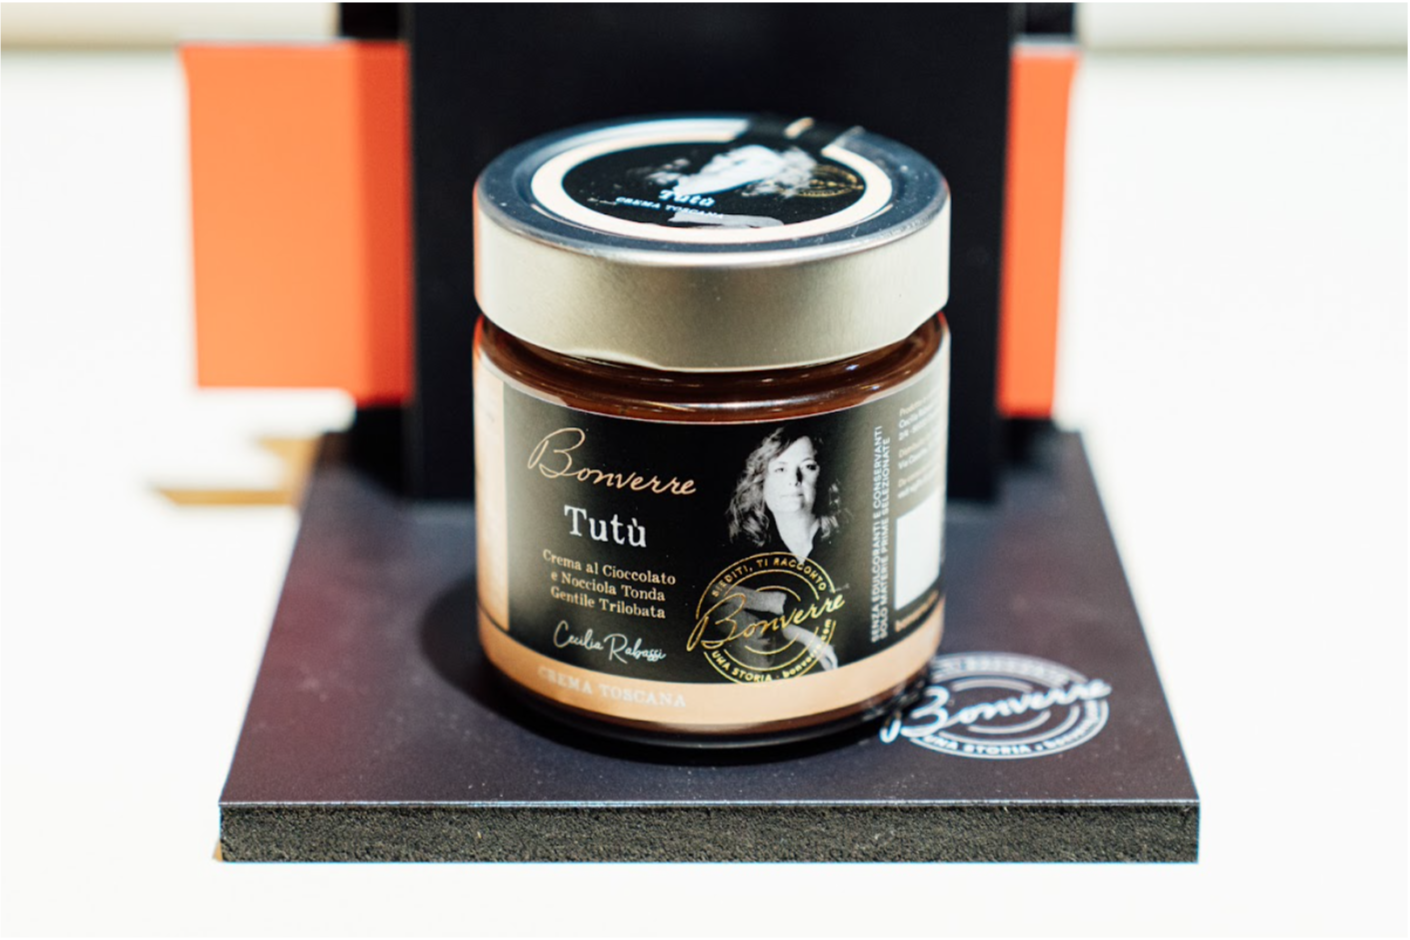 Bonverre presenta la crema di nocciola Tutù, in collaborazione con Cecilia Rabassi